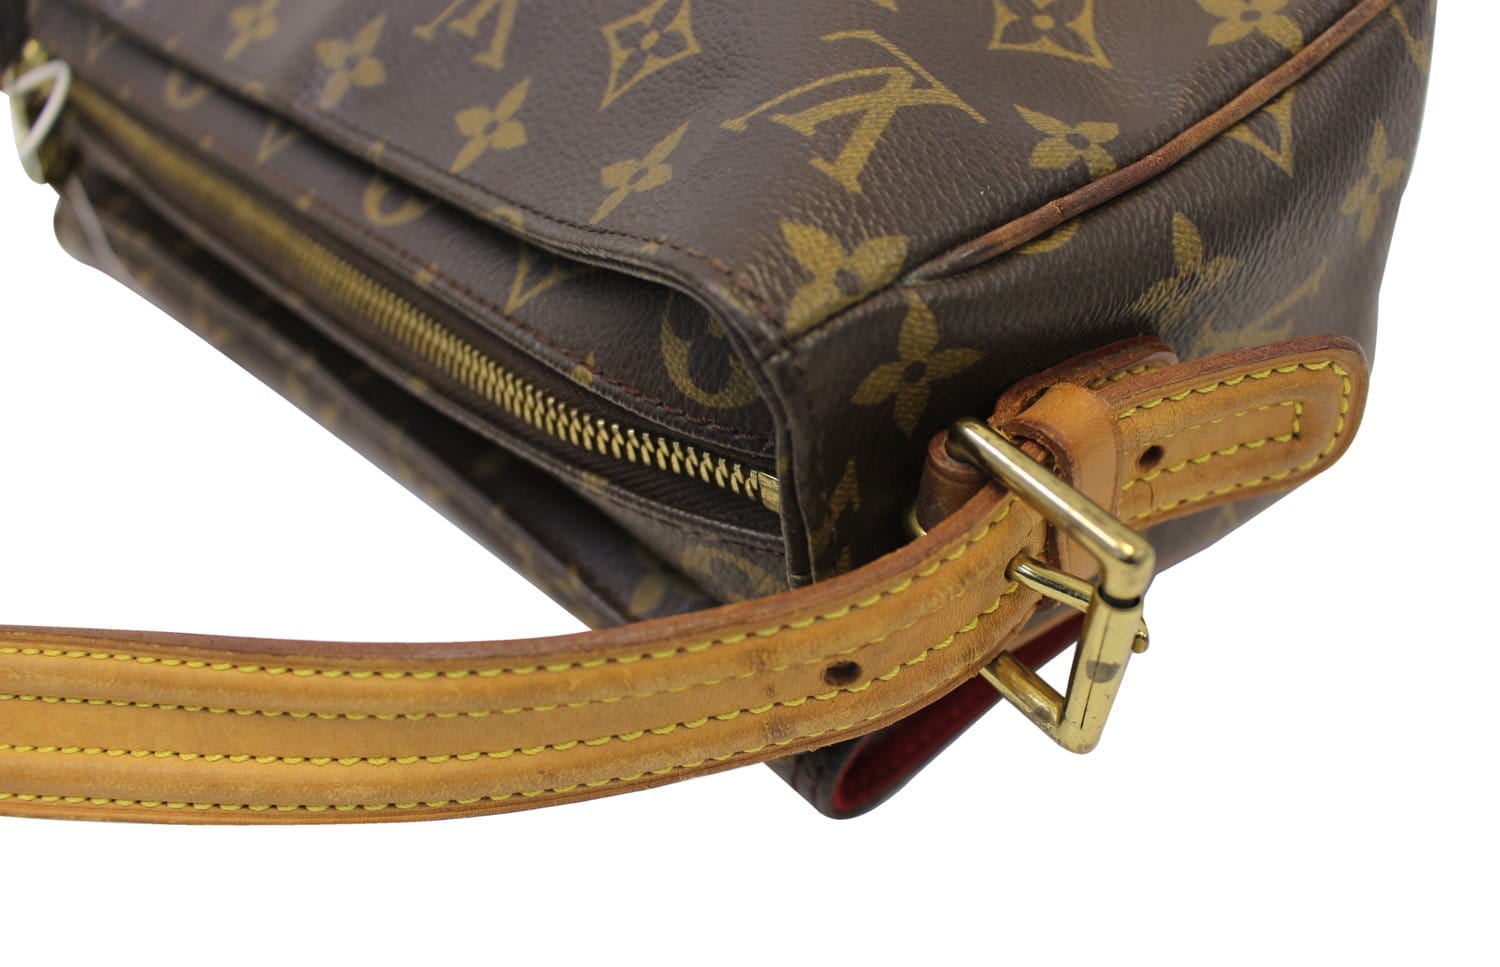 Shop for Louis Vuitton Monogram Canvas Leather Viva Cite MM Bag